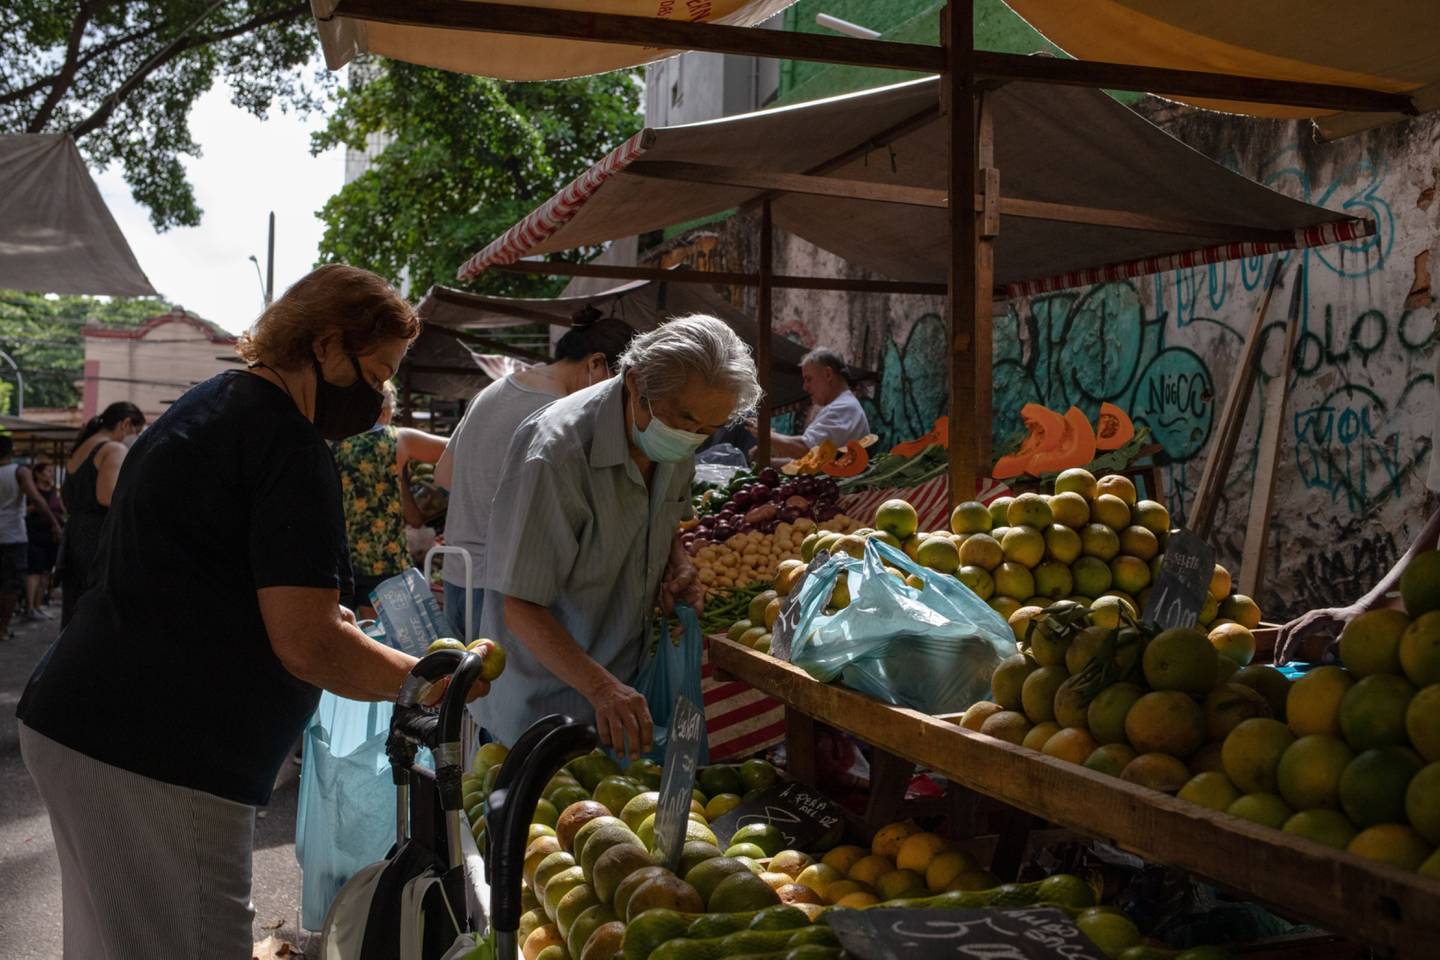 Los compradores buscan productos en un mercado al aire libre en el barrio de Tijuca de Río de Janeiro, Brasil, el martes 5 de abril de 2022. Aunque el banco central de Brasil lleva meses en una agresiva campaña de ajuste, la tasa de inflación del país seguía siendo del 11,3% en marzo.